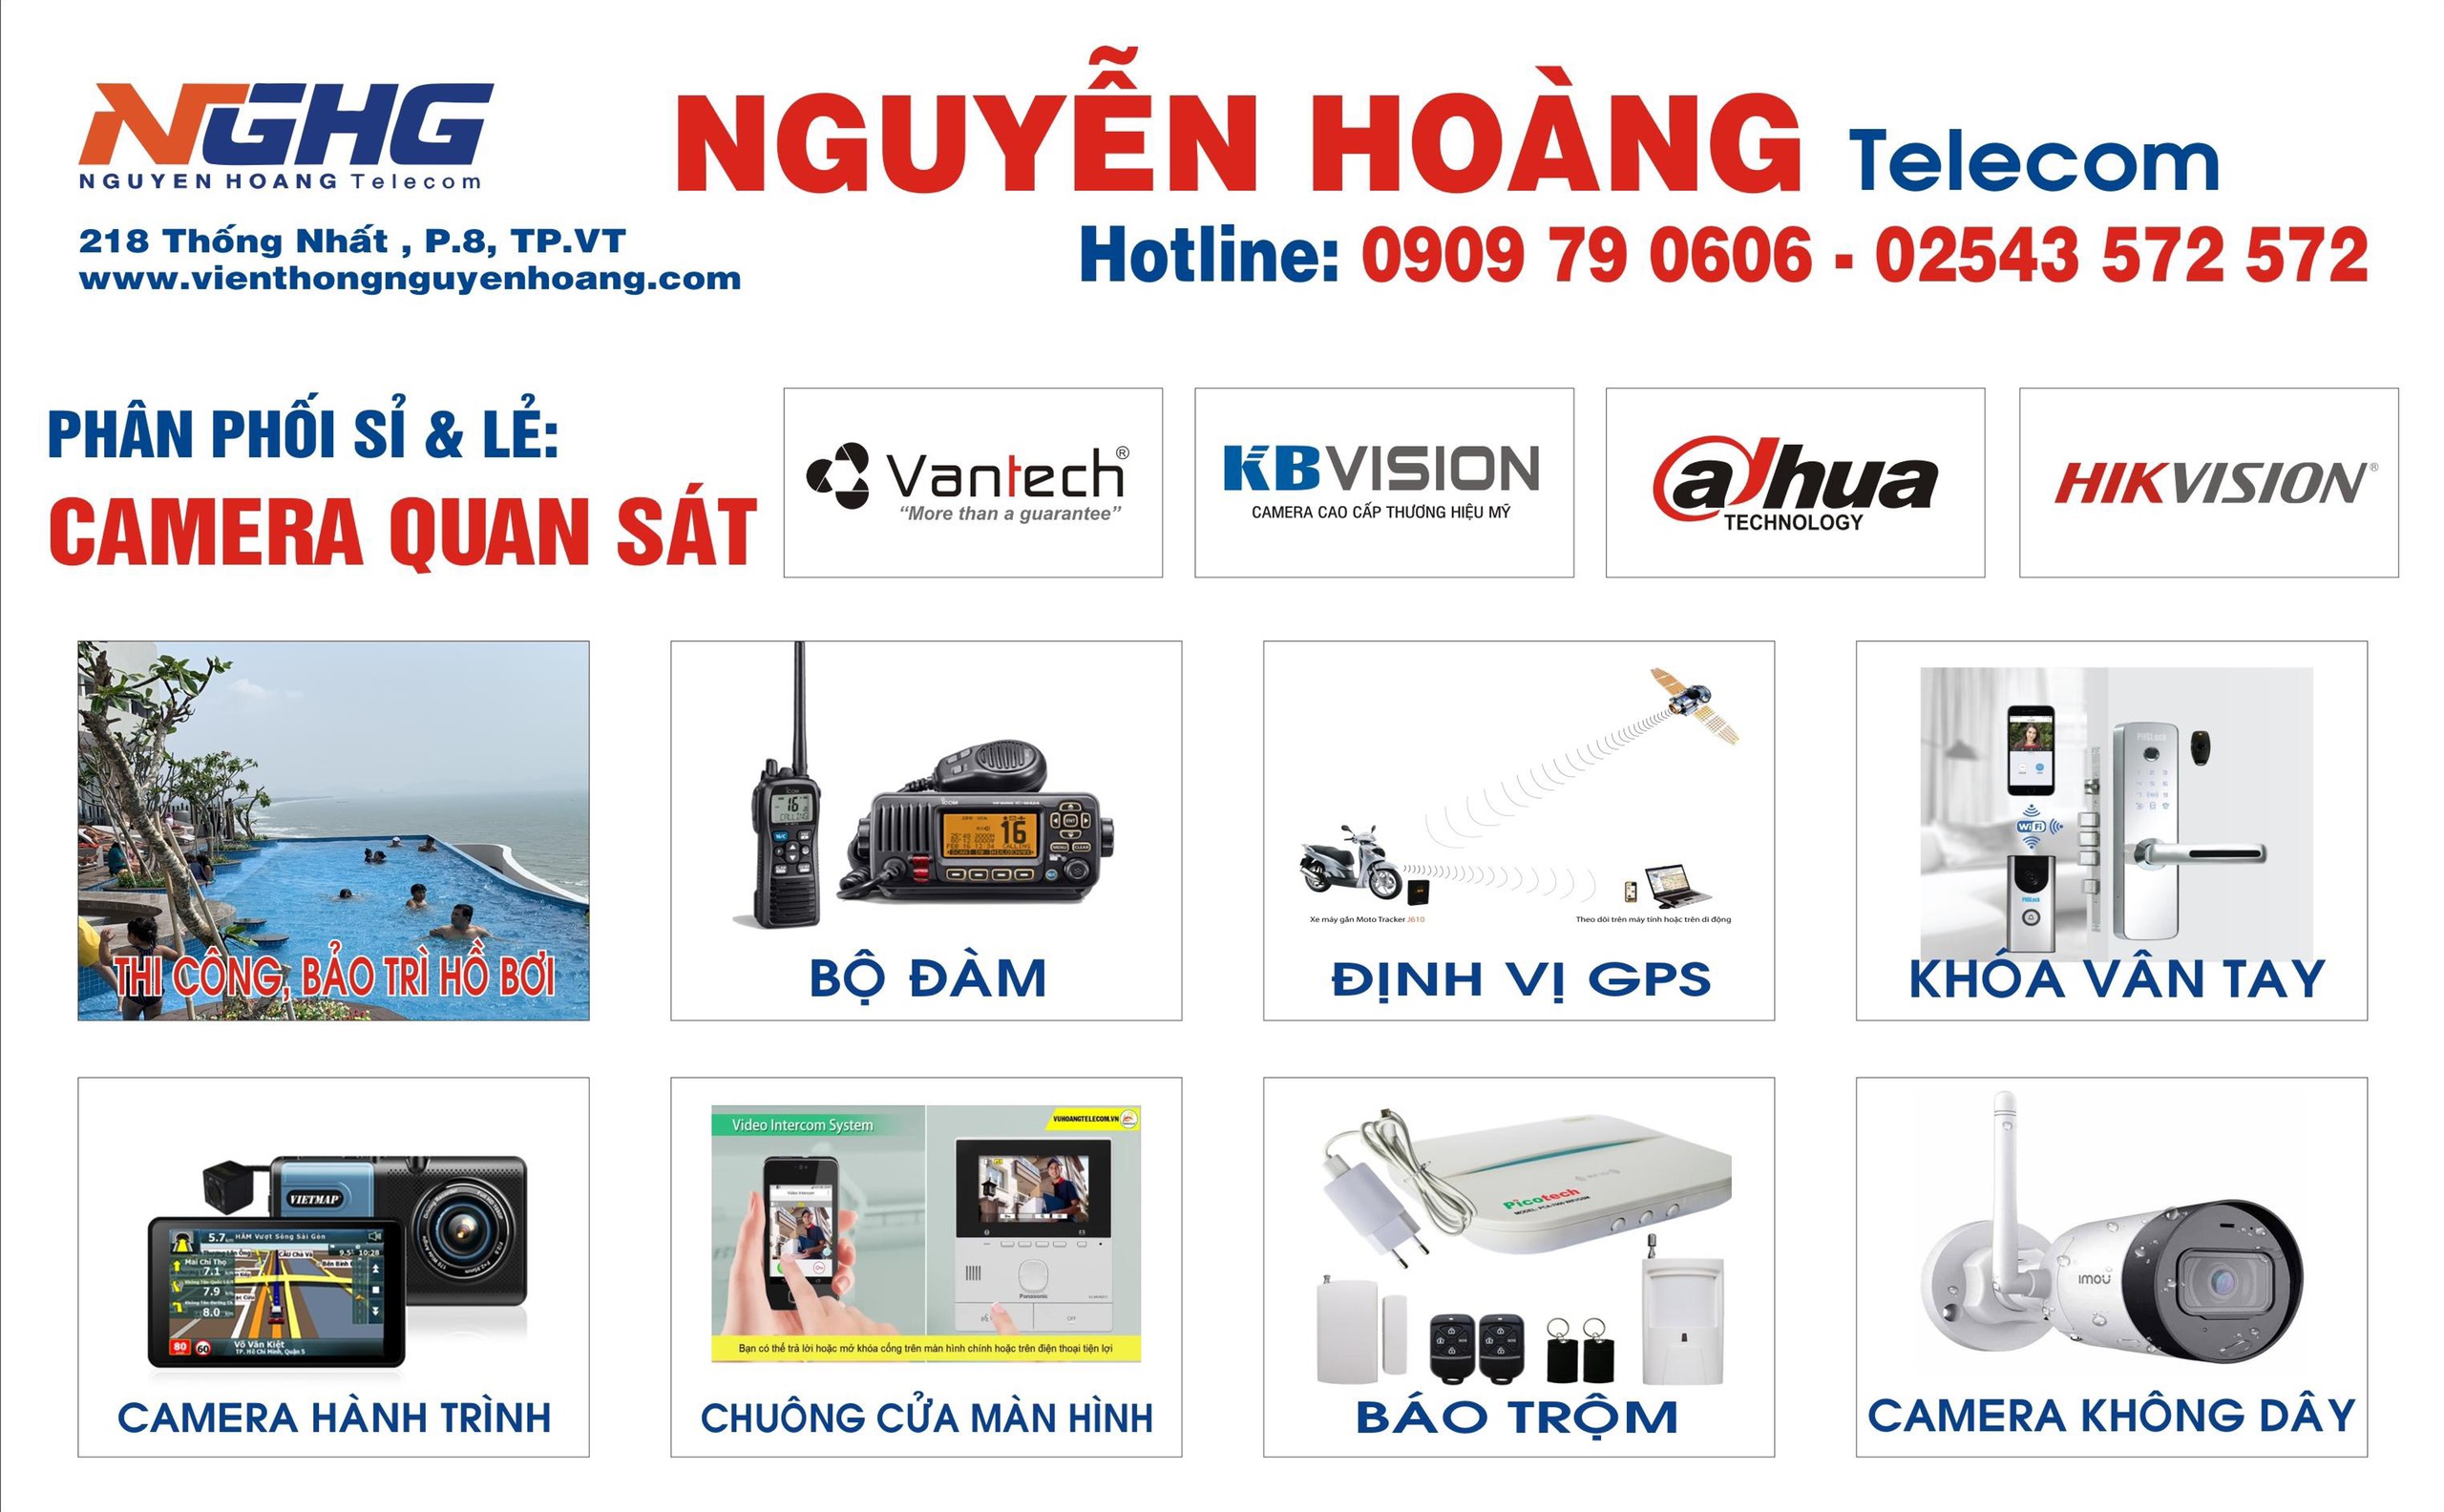 Nguyễn Hoàng telecom